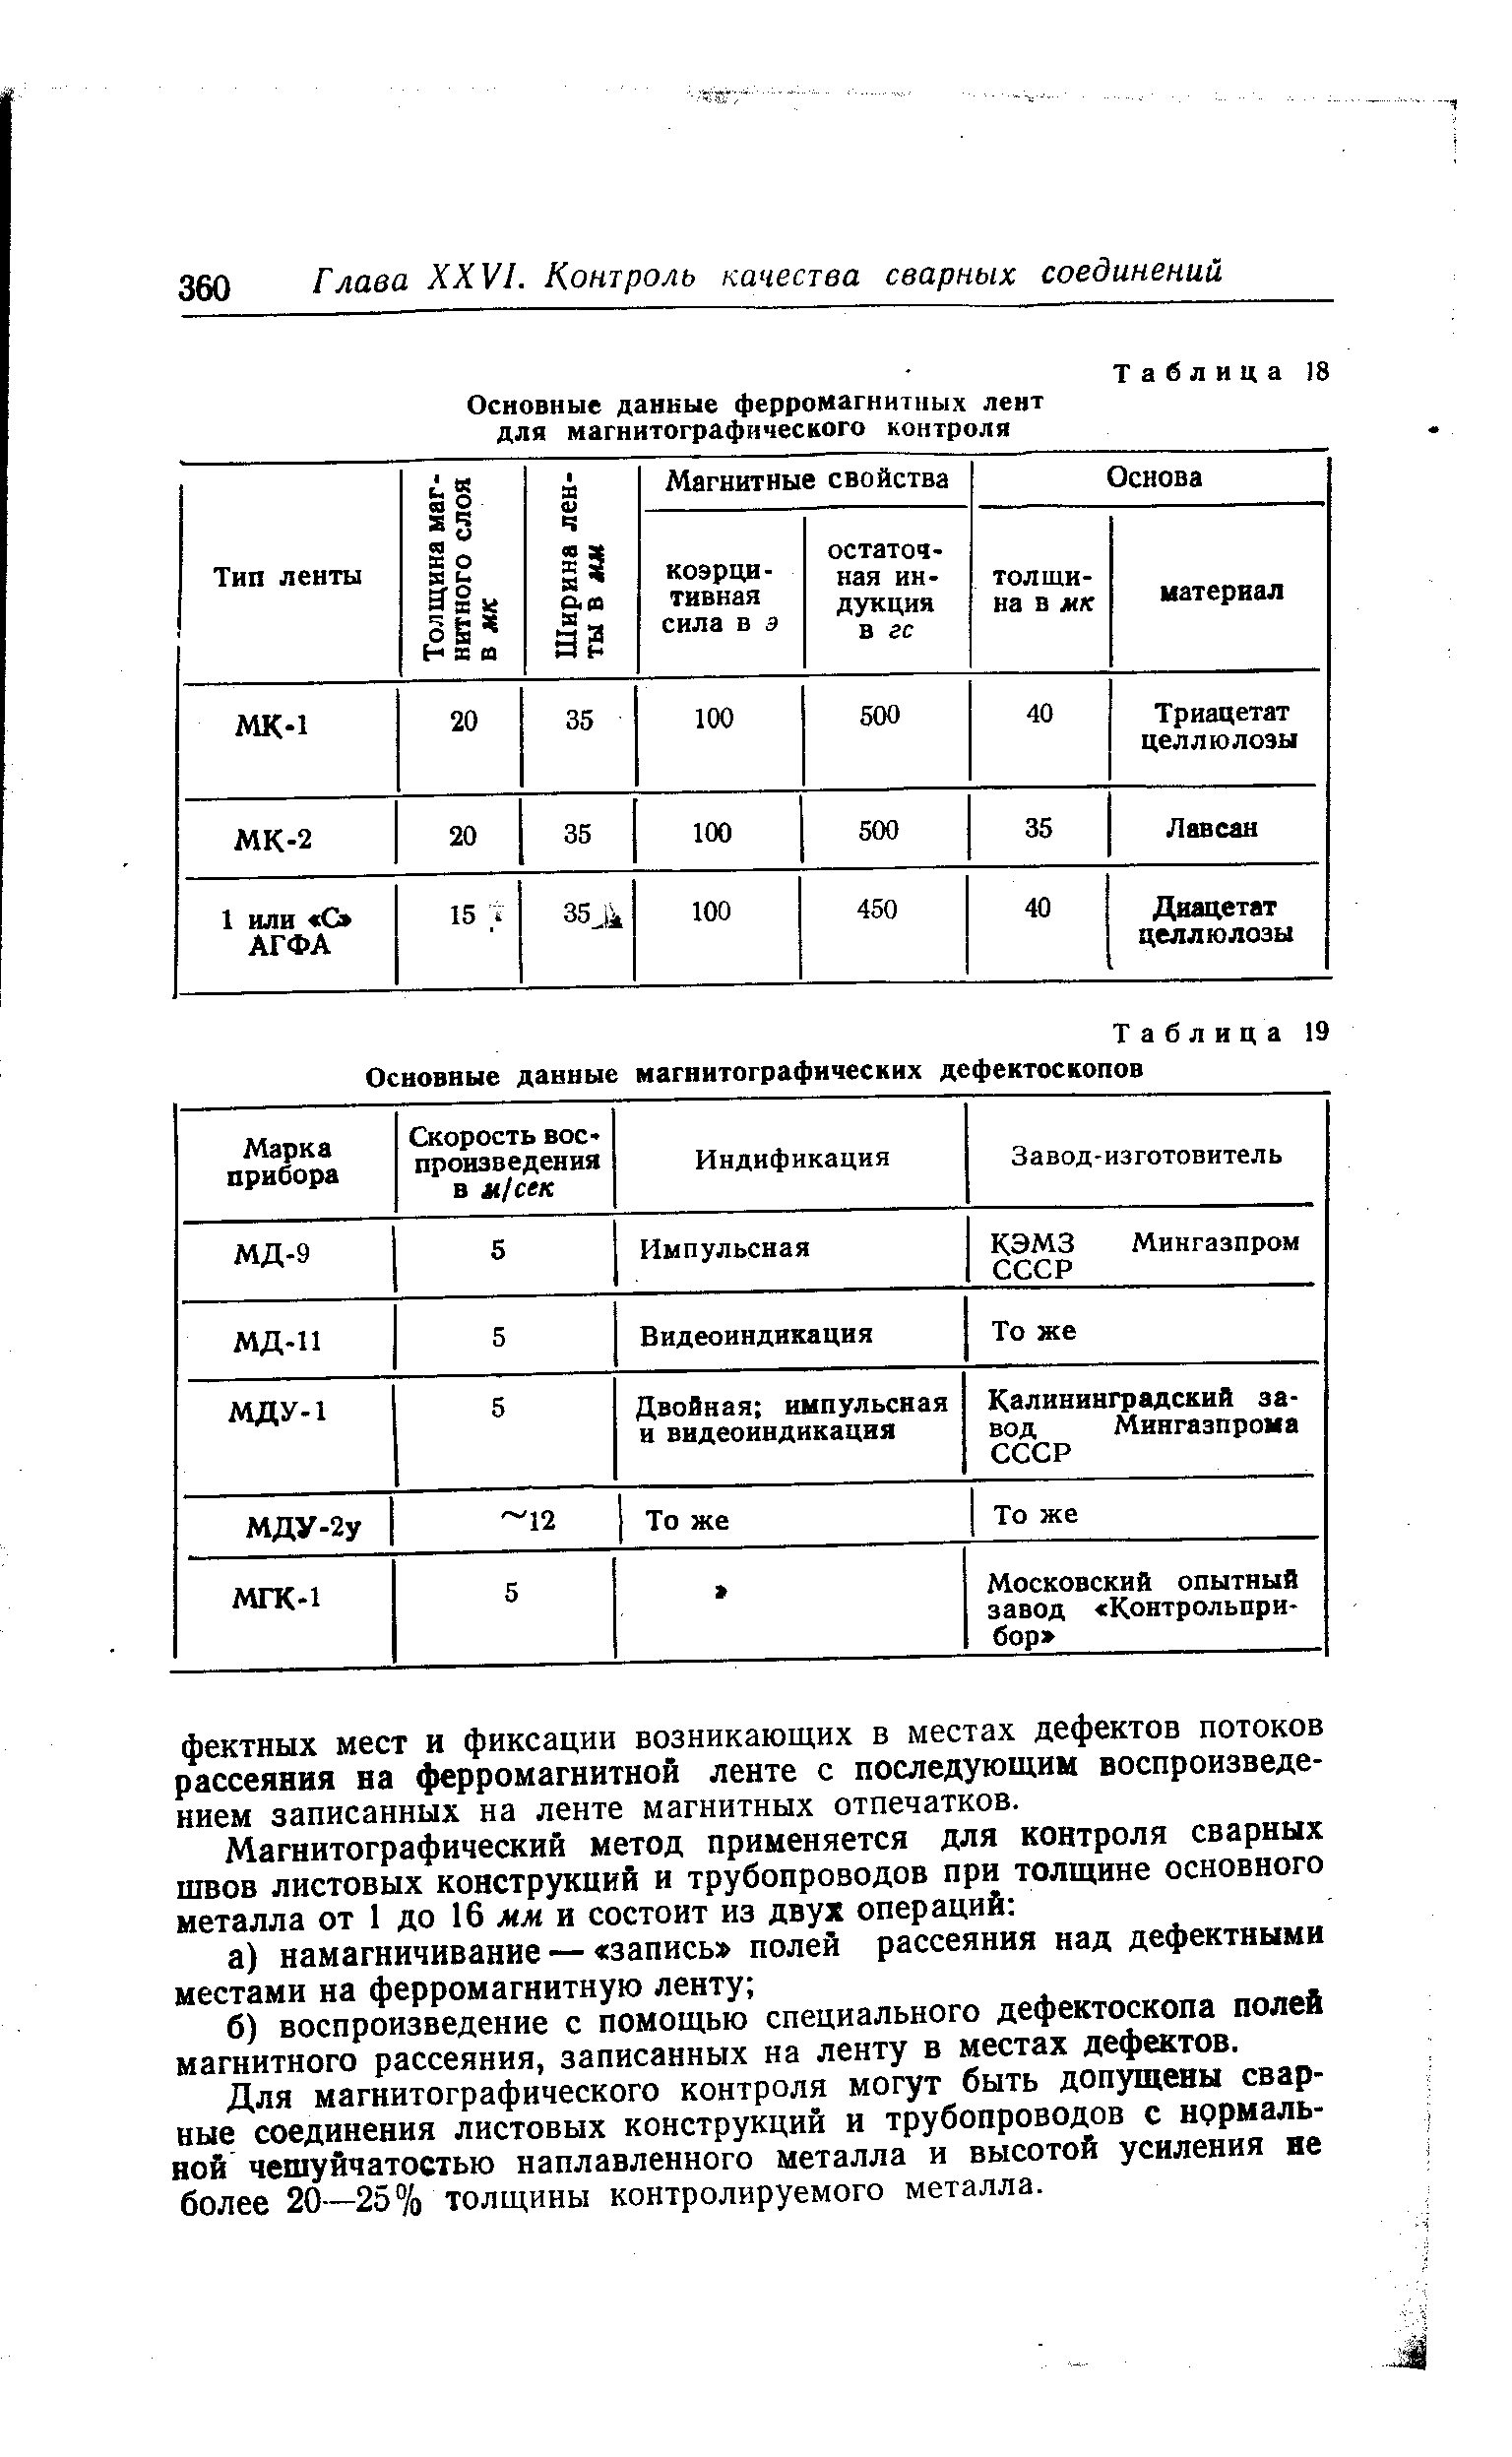 Таблица 19 Основные данные магнитографических дефектоскопов
